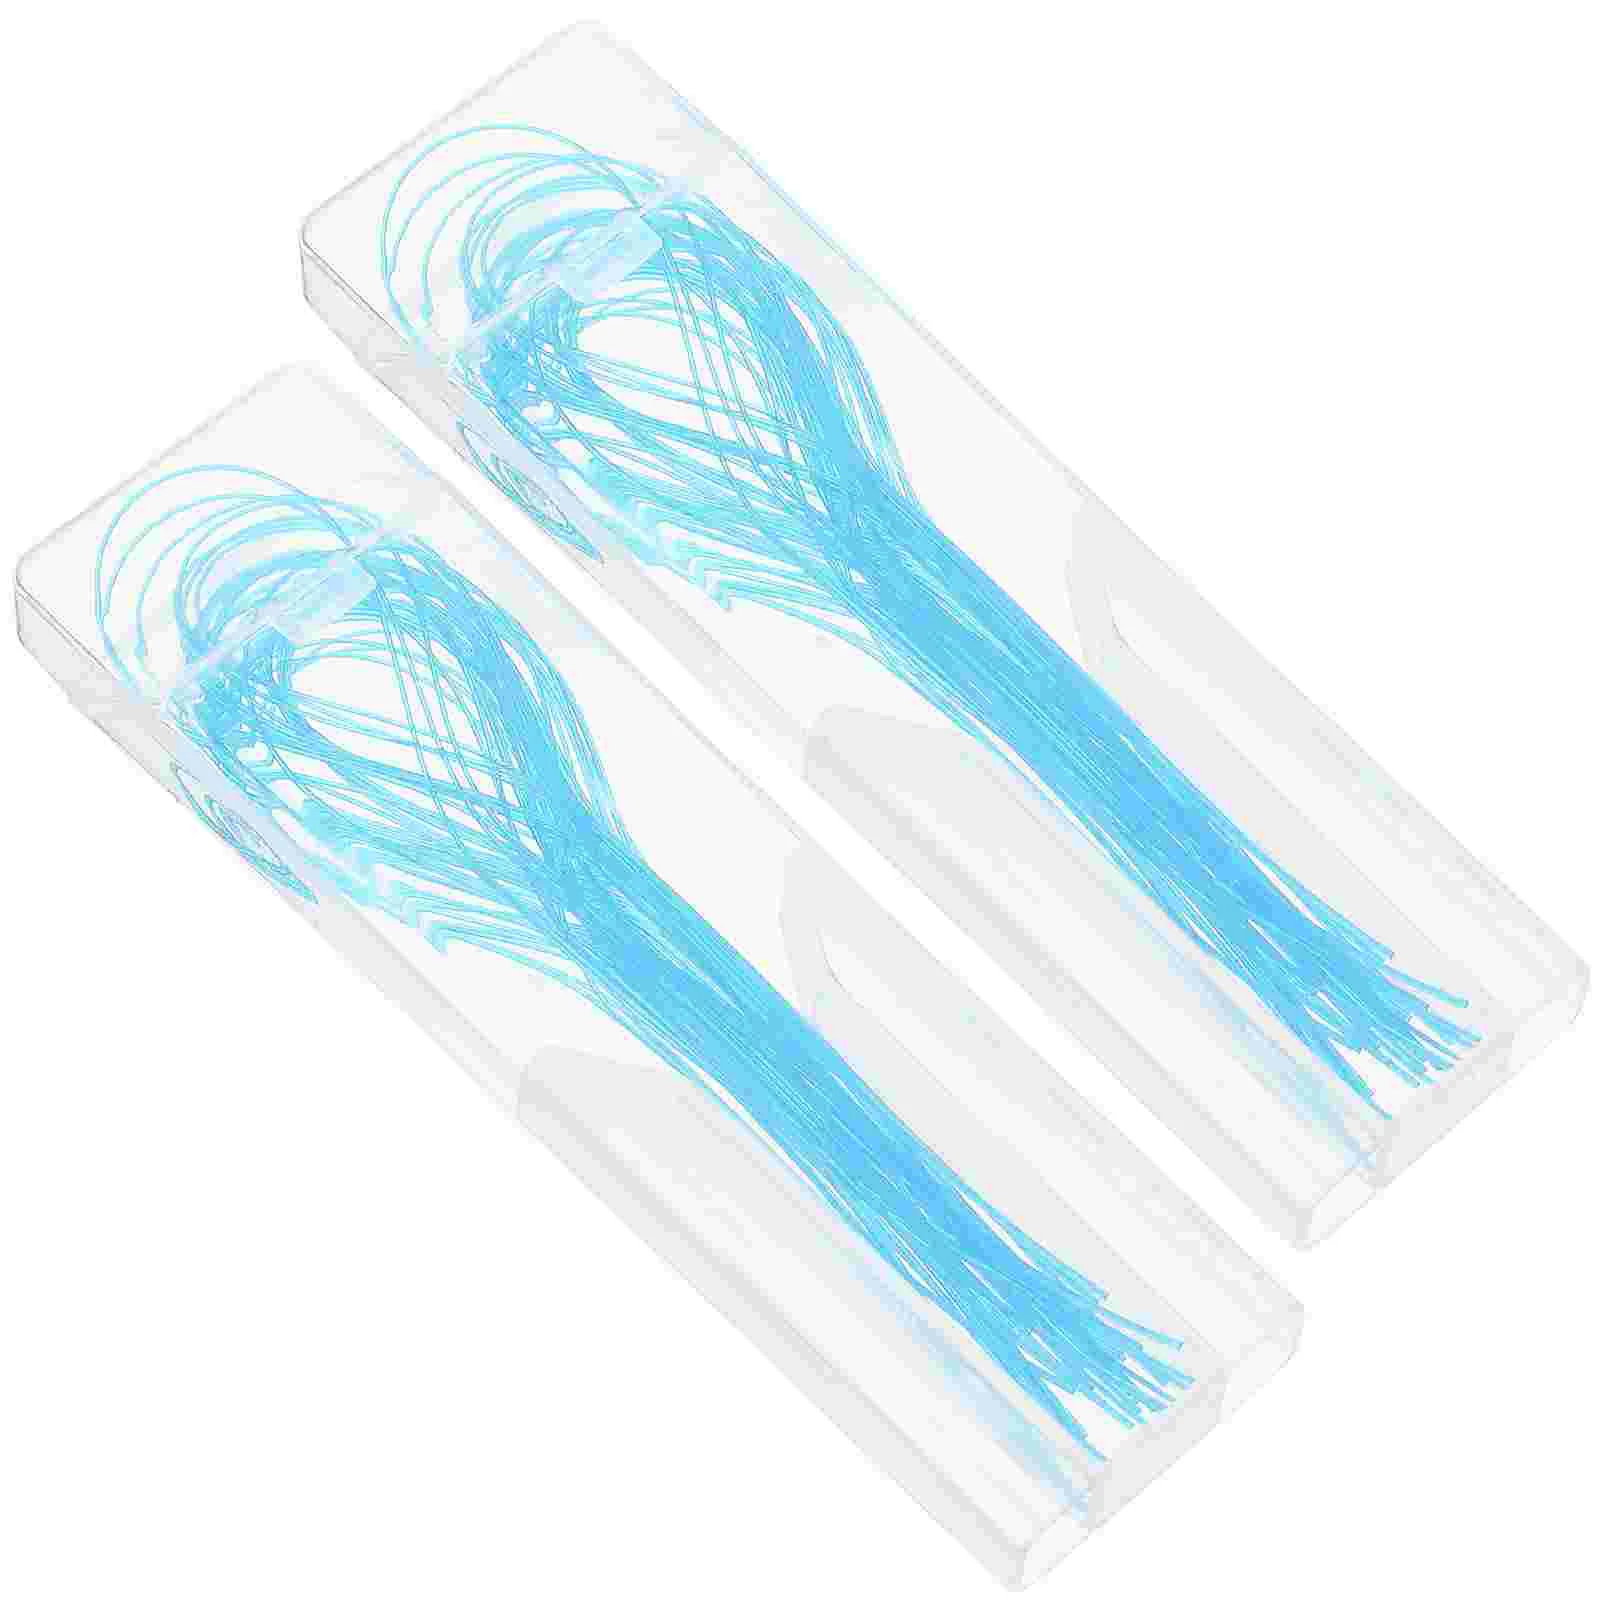 

2 коробки, профессиональные практичные прочные портативные безопасные зубные наконечники для ежедневного использования в клинике